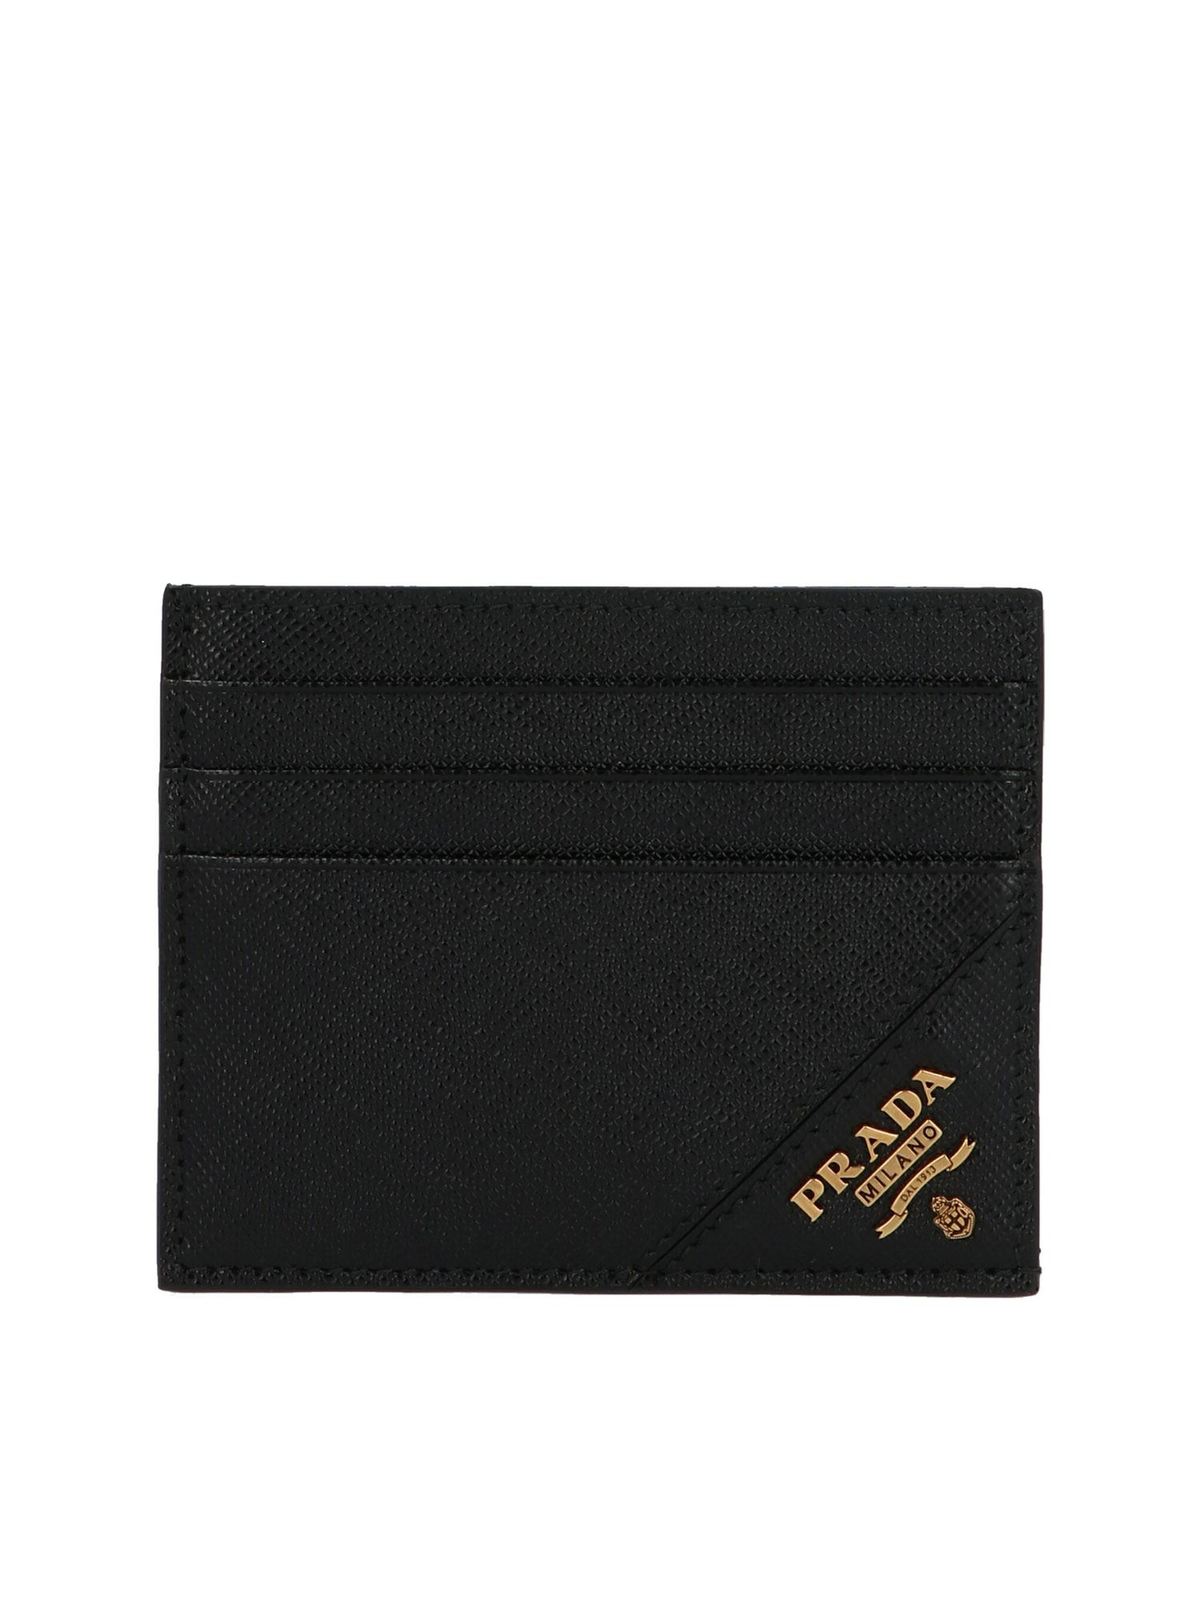 prada wallet card holder